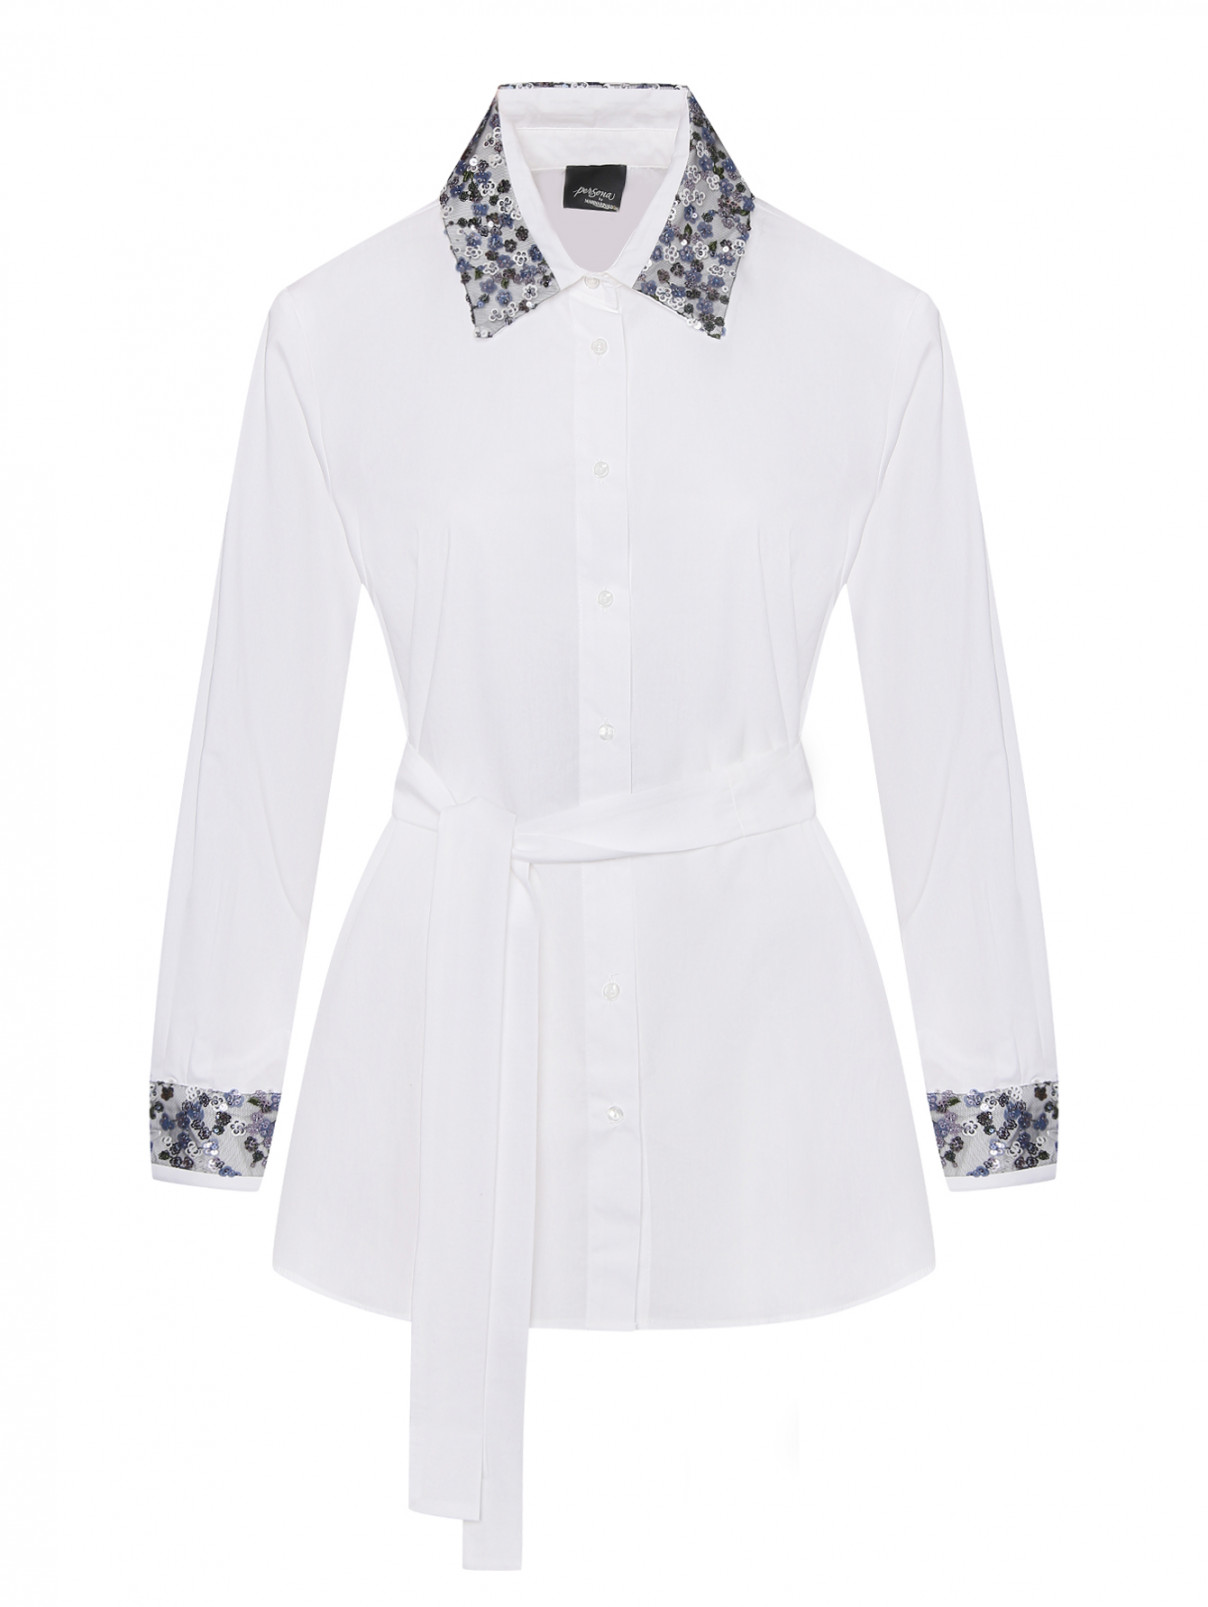 Хлопковая блуза с поясом Persona by Marina Rinaldi  –  Общий вид  – Цвет:  Белый